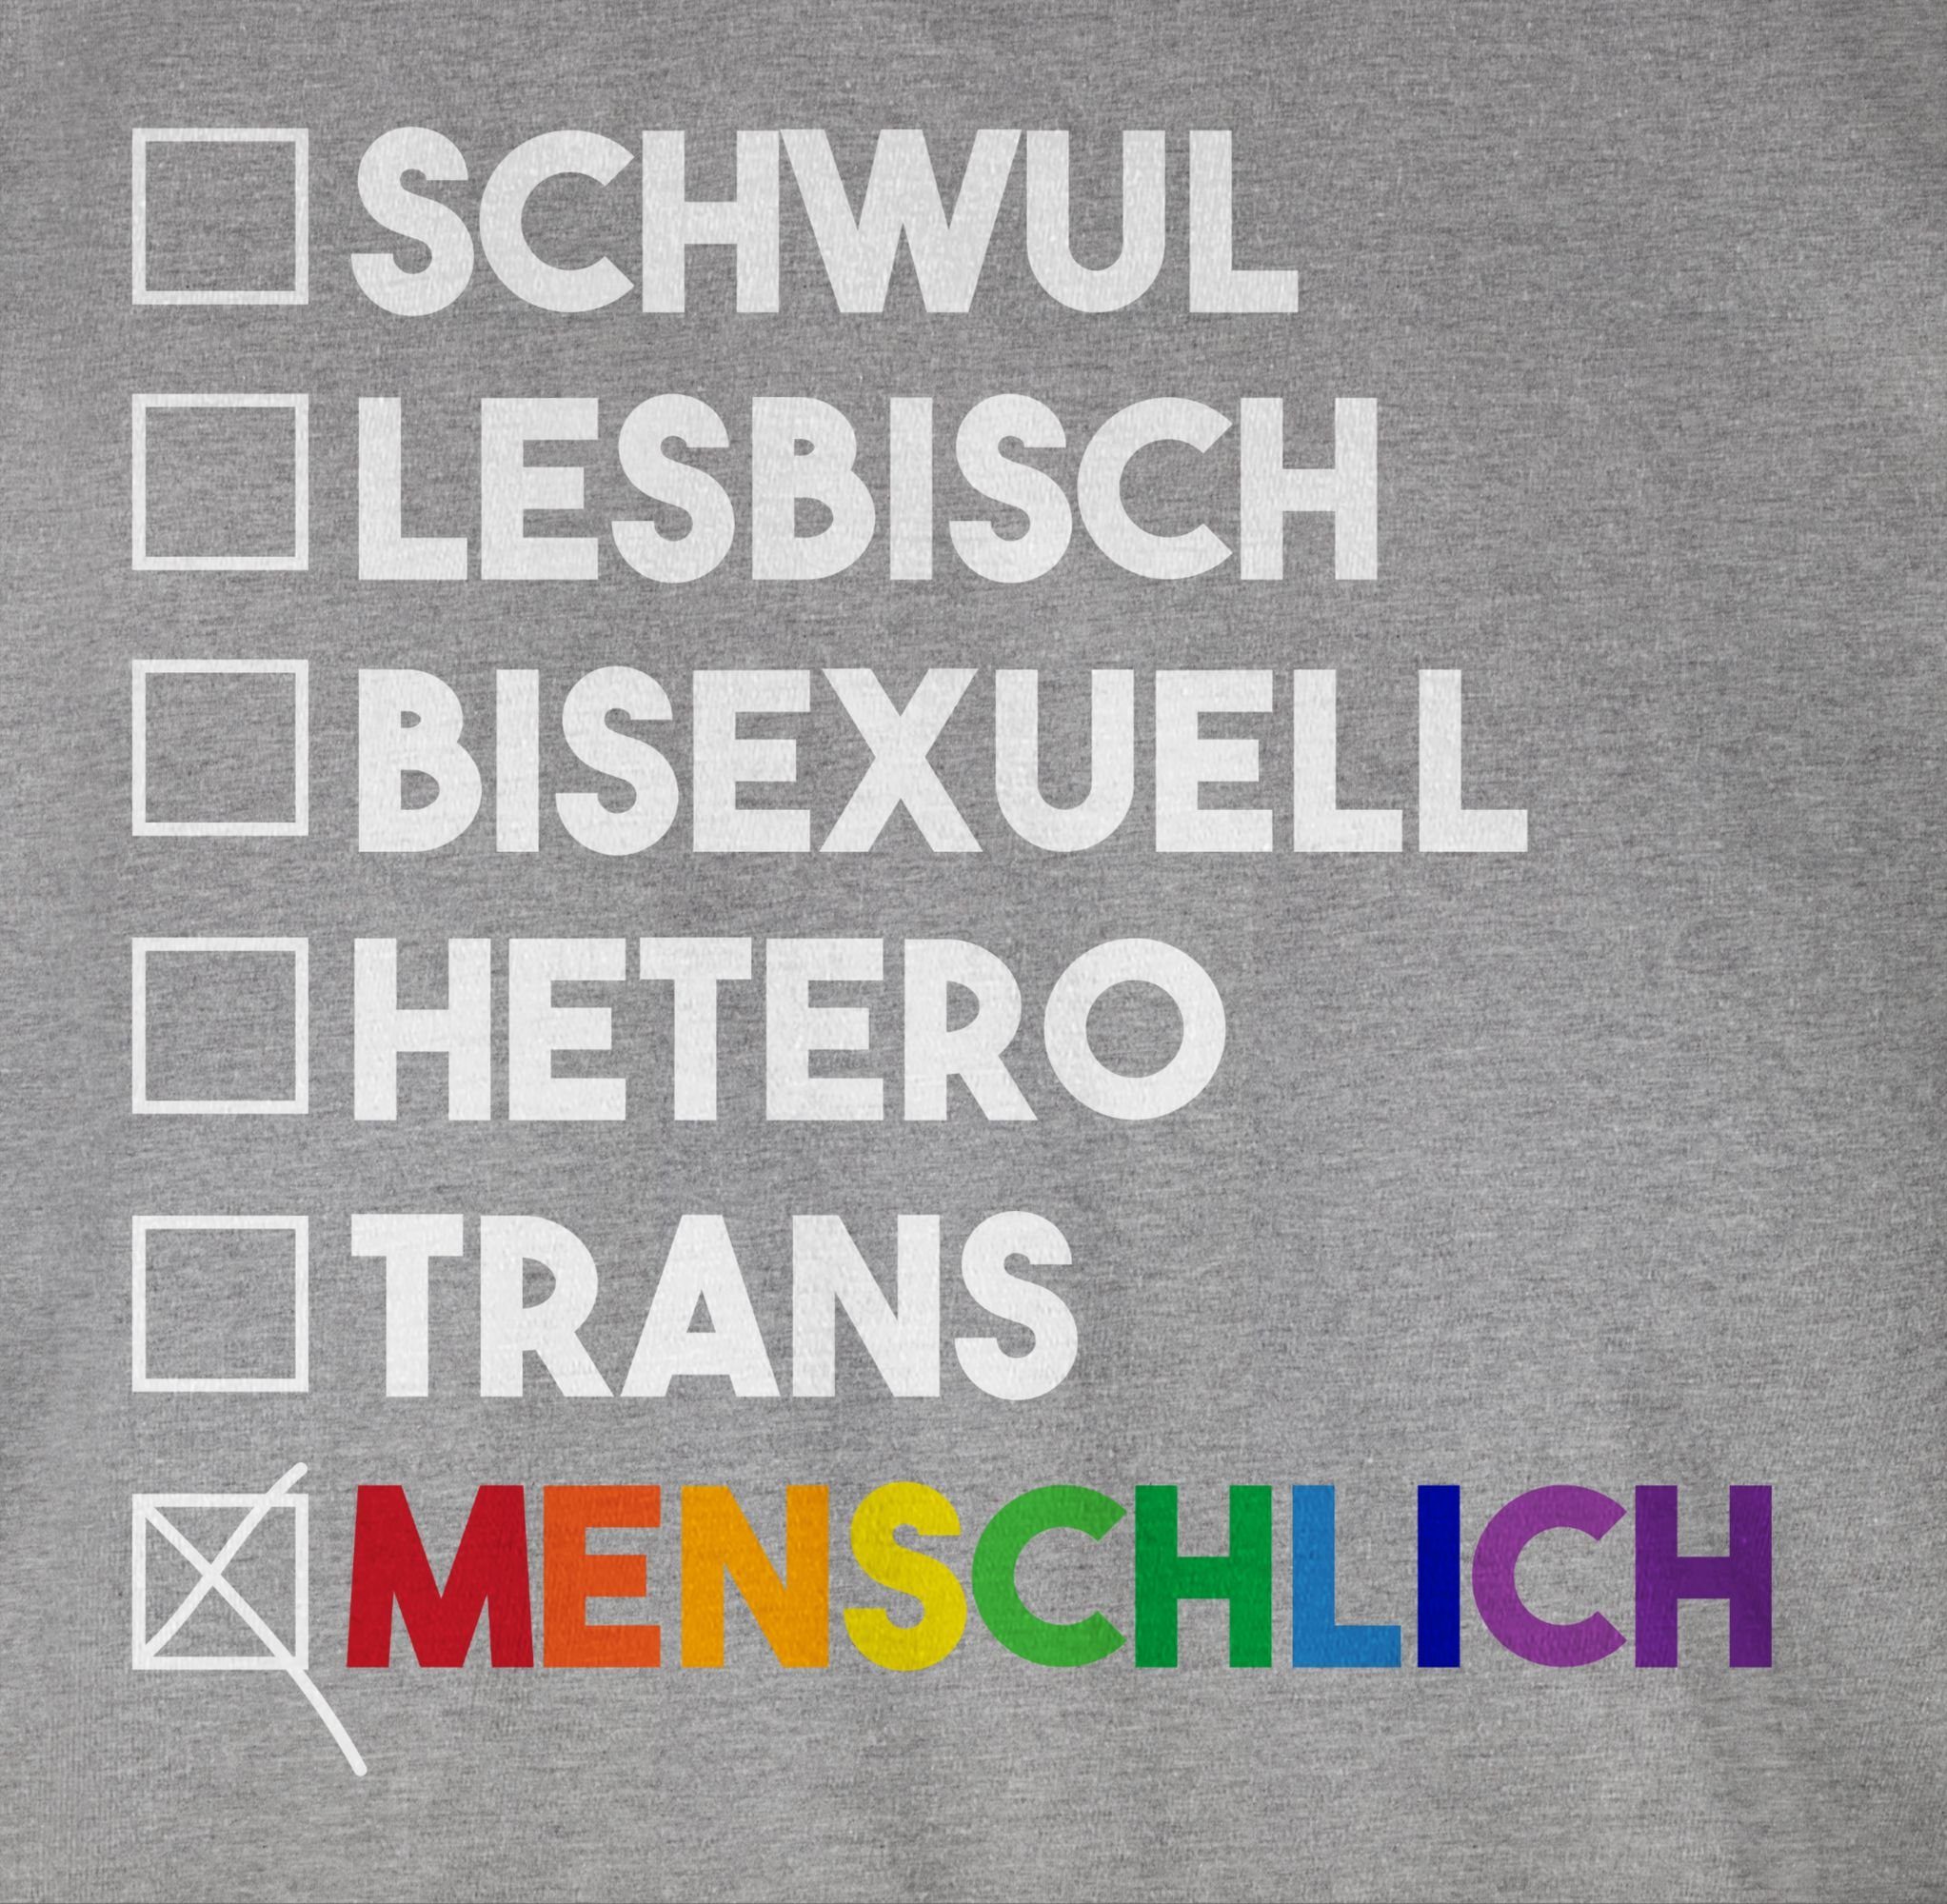 Shirtracer T-Shirt Menschlich - - Regenbogen meliert - weiß Wahl Pride Kleidung 02 Grau - Deine LGBT